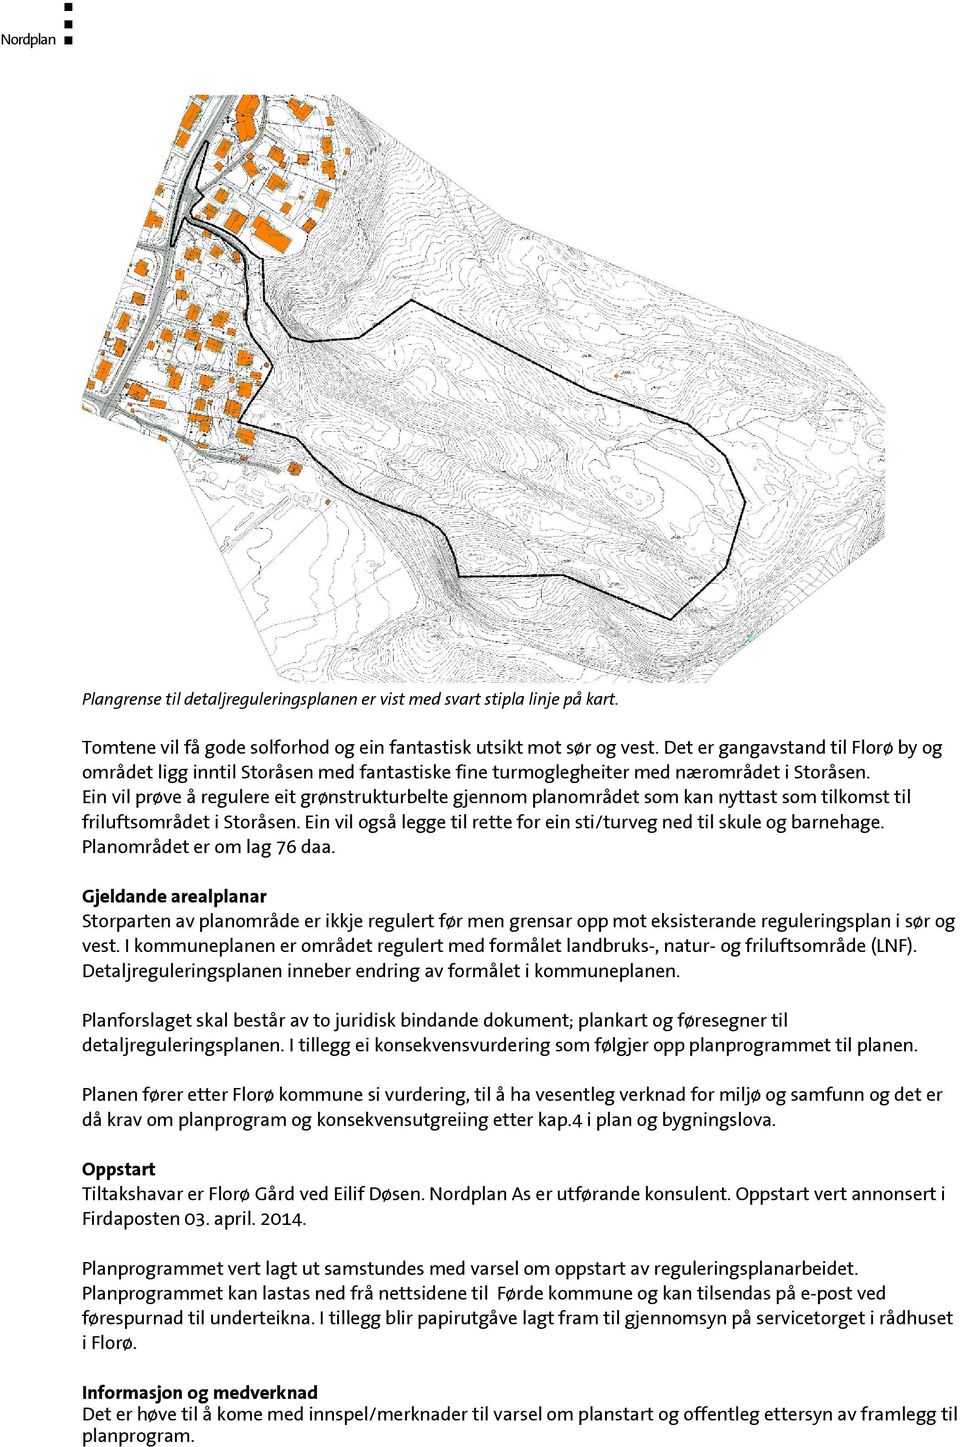 Ein vil prøve å regulere eit grønstrukturbelte gjennom planområdet som kan nyttast som tilkomst til friluftsområdet i Storåsen.